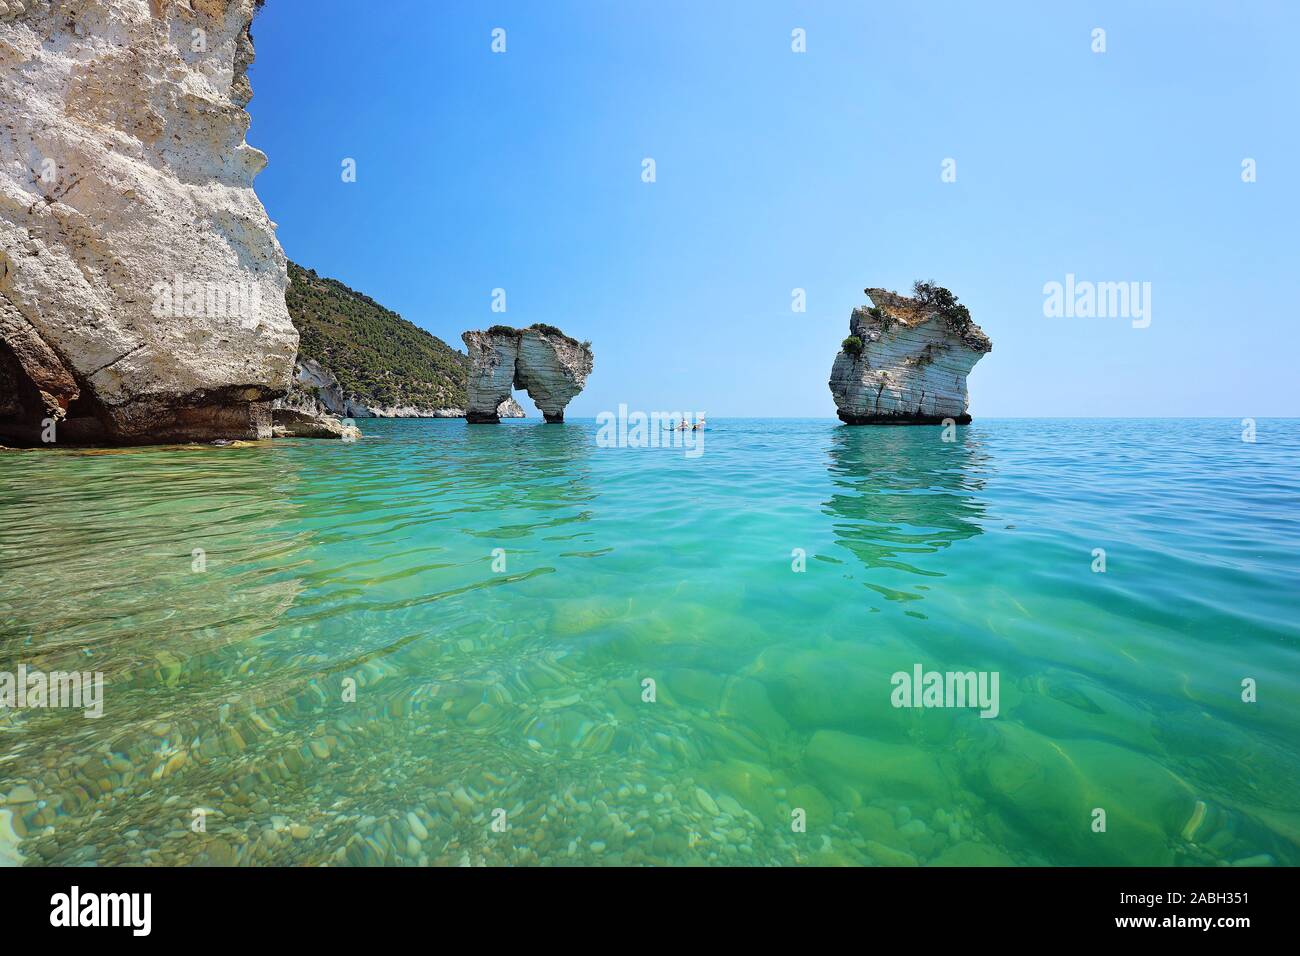 Faraglioni di Puglia Baia delle Zagare - Nature preserve. Les piles, le rock formation côtier et océanique érodées par les vagues. Banque D'Images